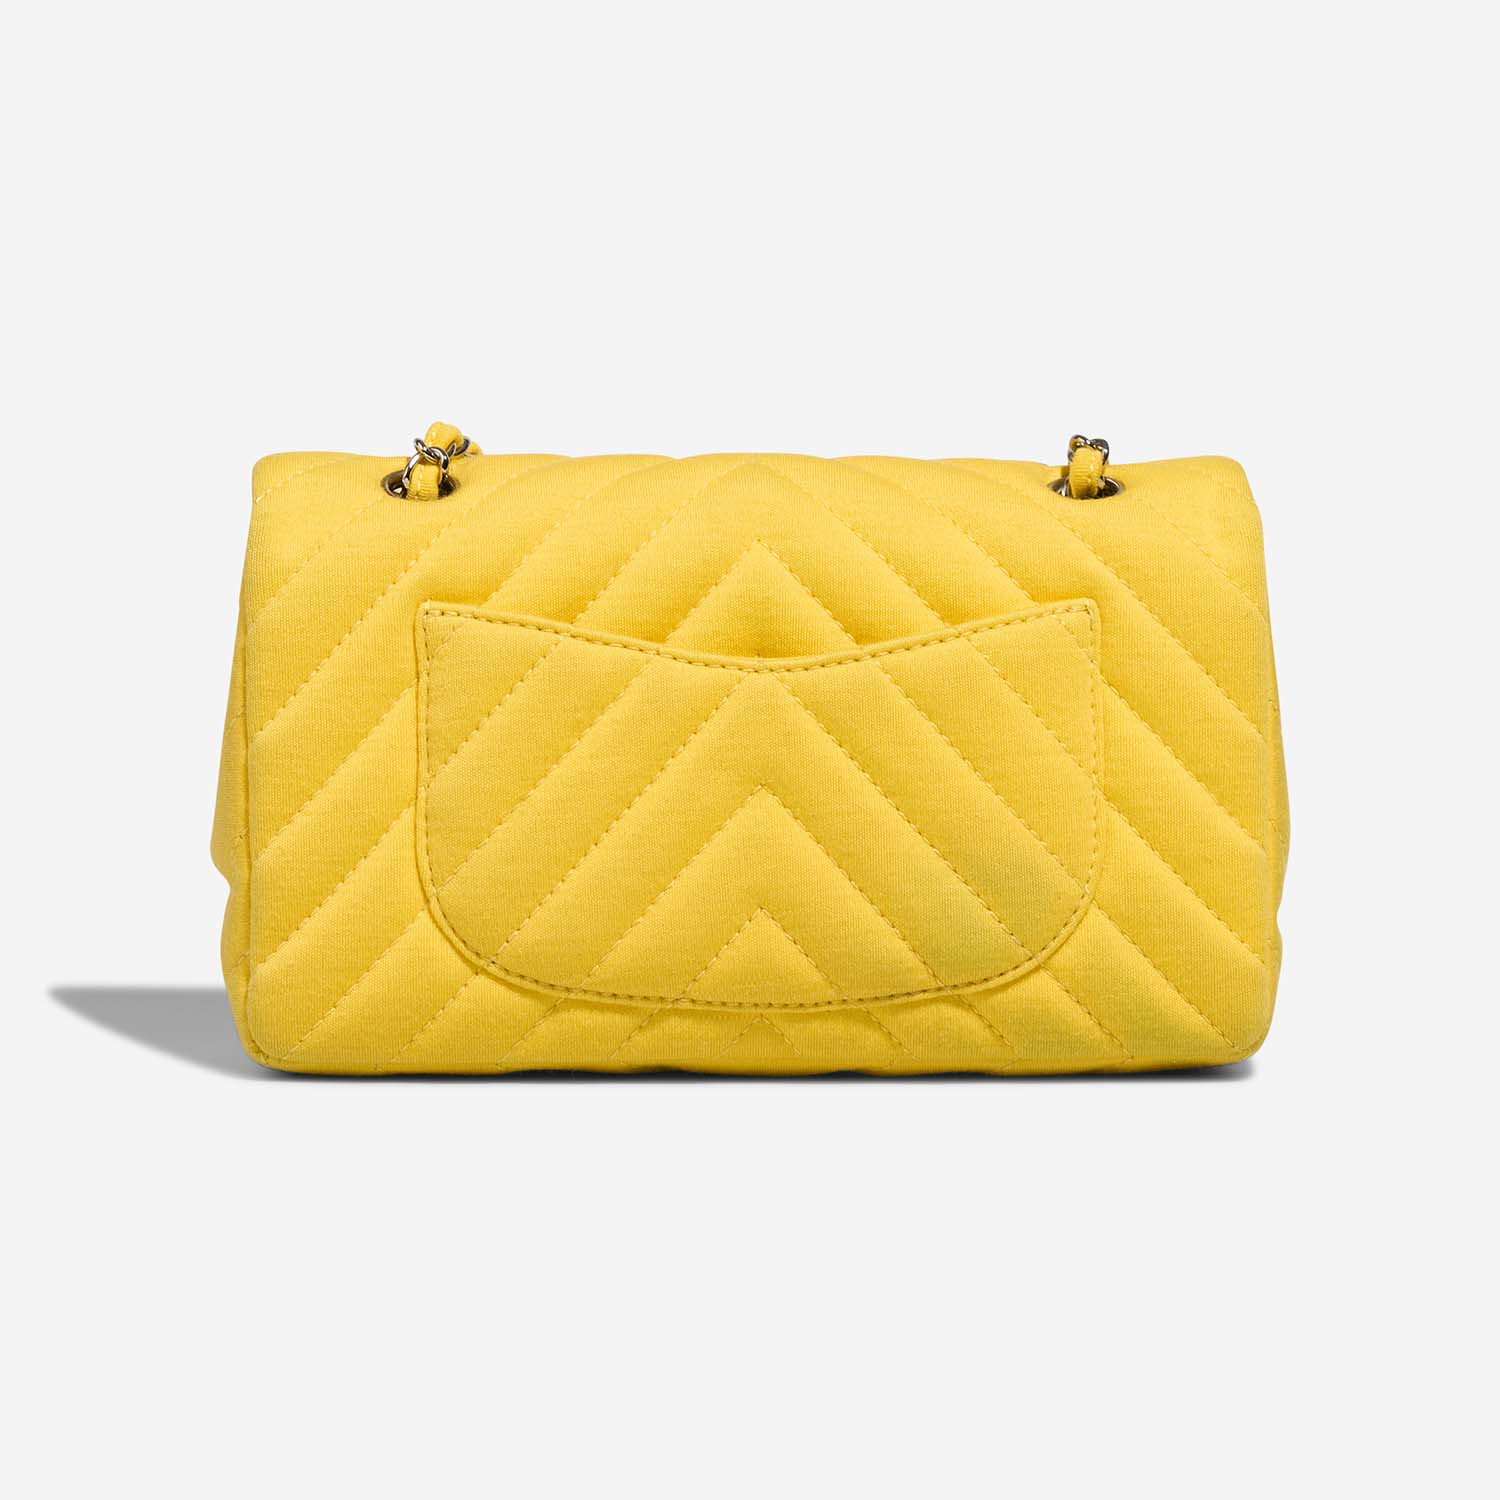 Chanel Timeless Medium Yellow Back | Verkaufen Sie Ihre Designer-Tasche auf Saclab.com